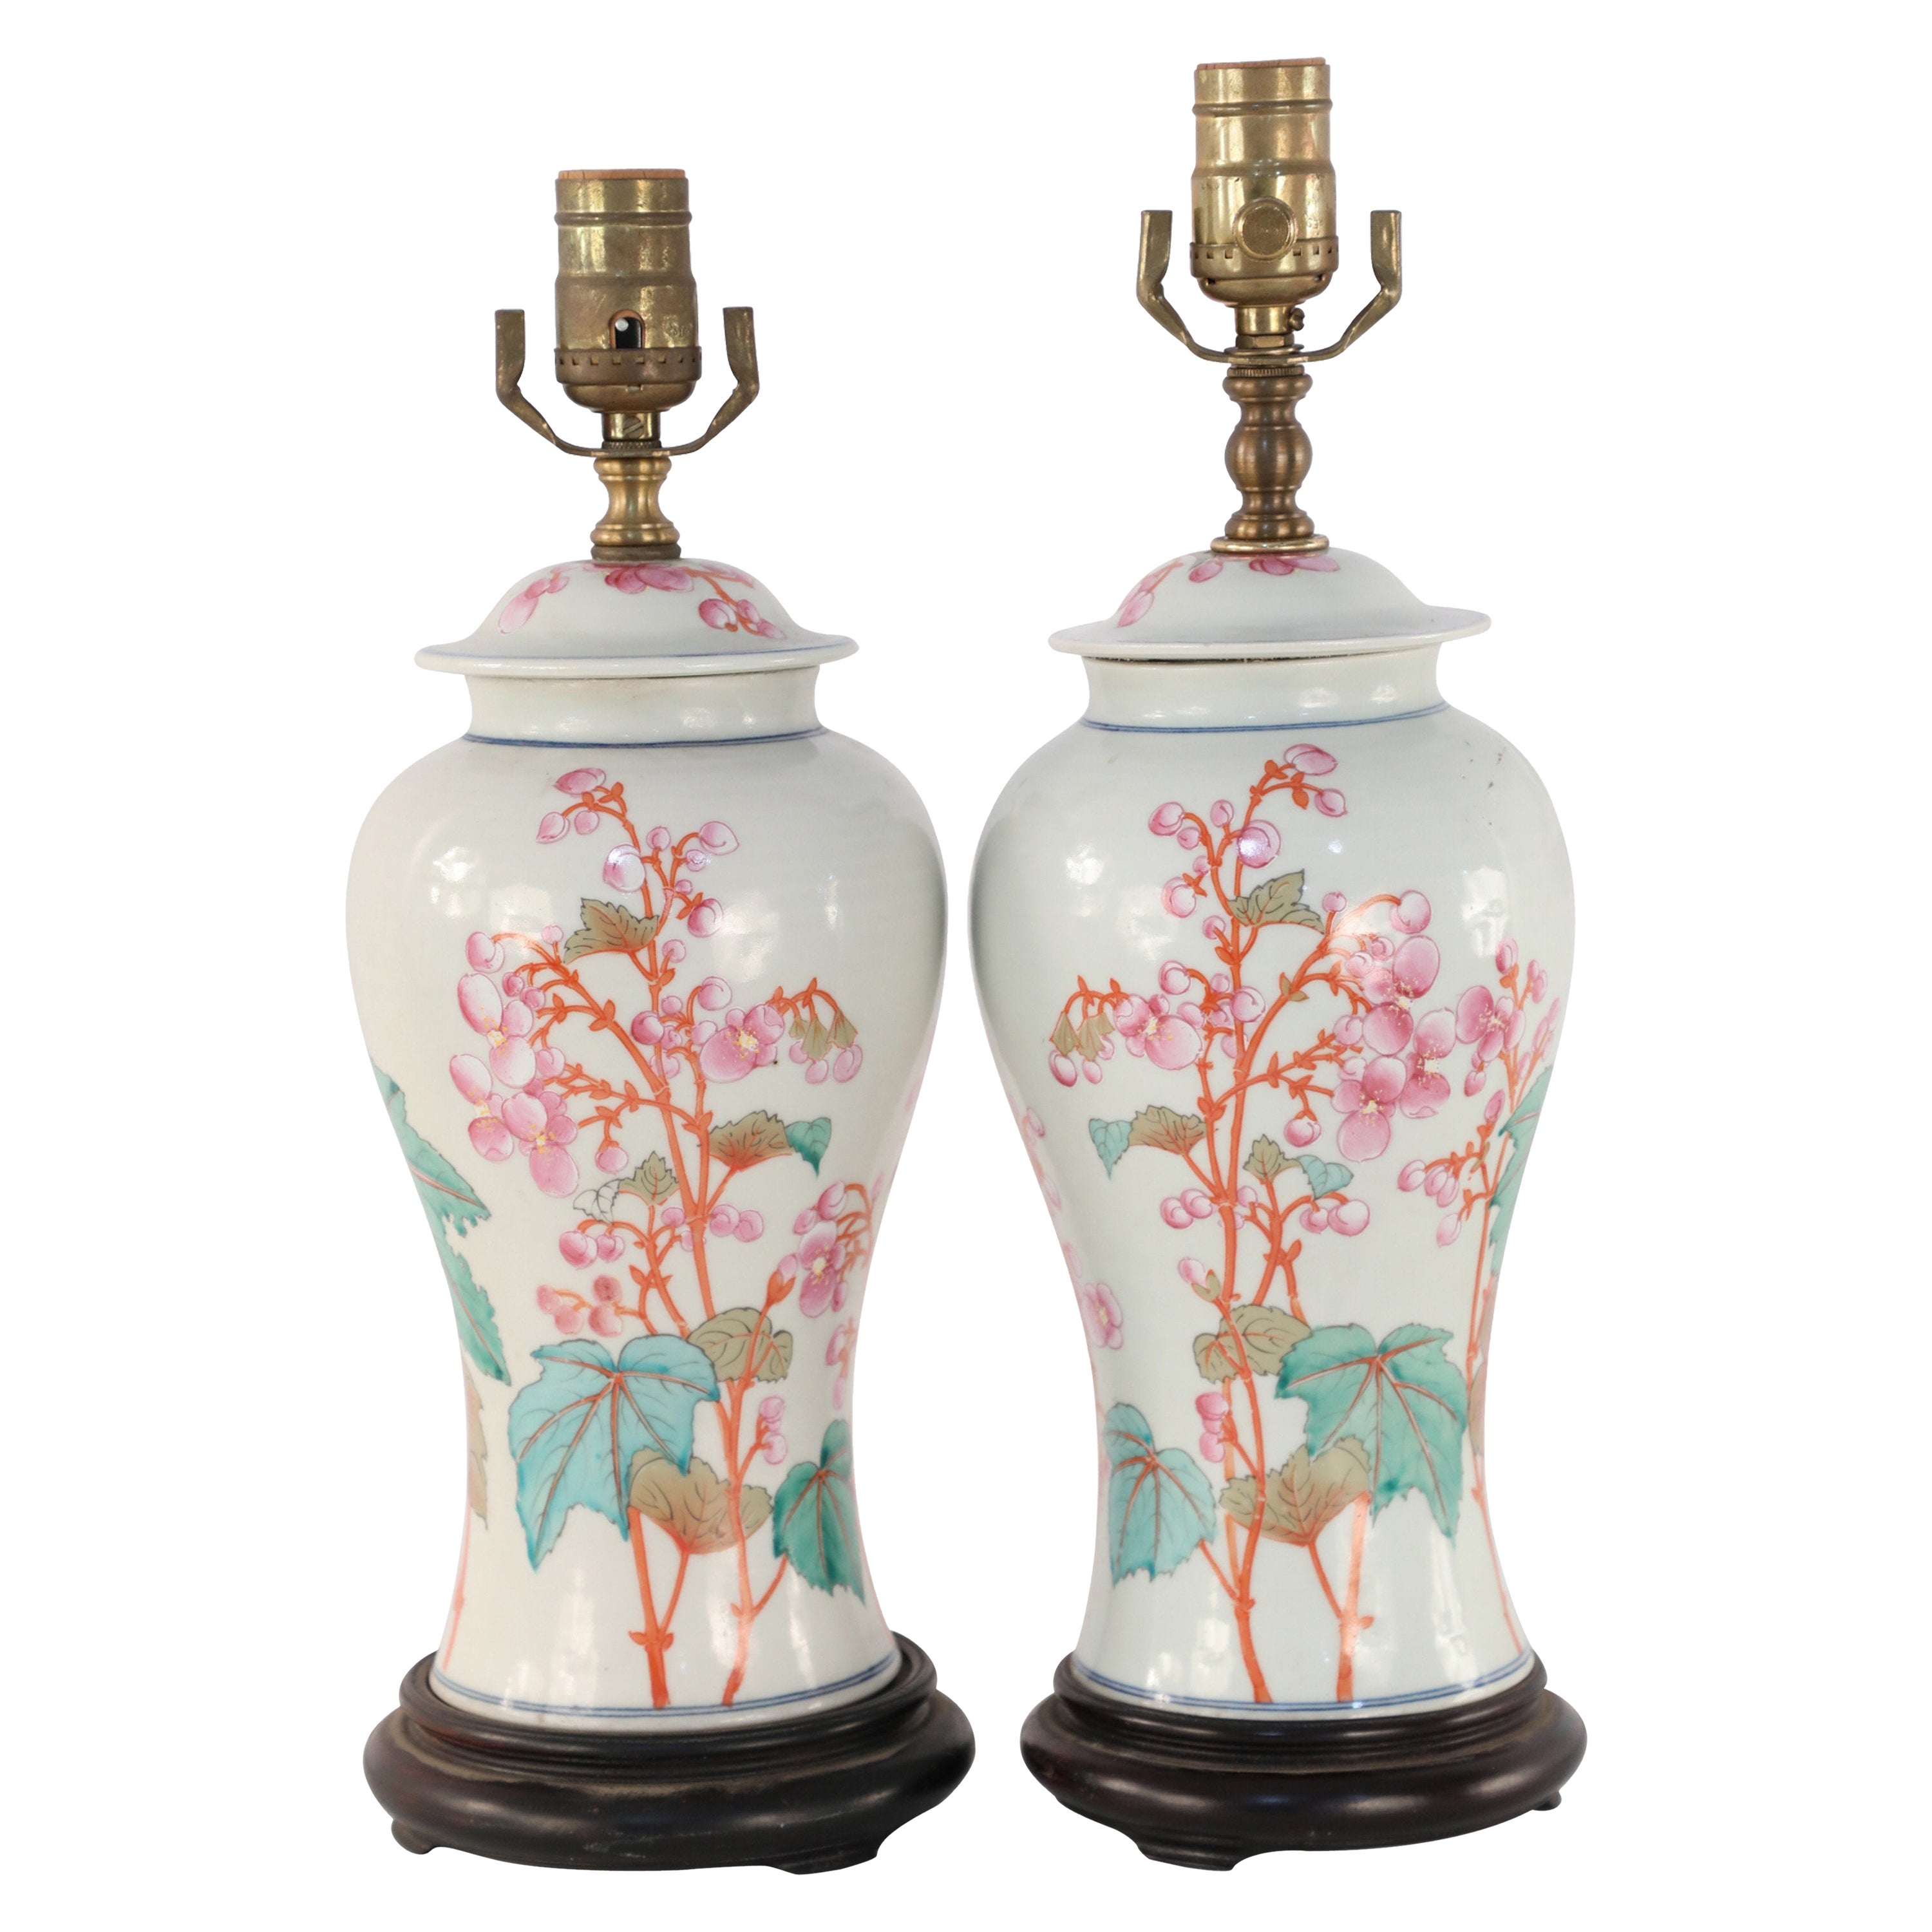 Paire de lampes de table chinoises en porcelaine à motifs floraux orange et rose, de couleur Off-White